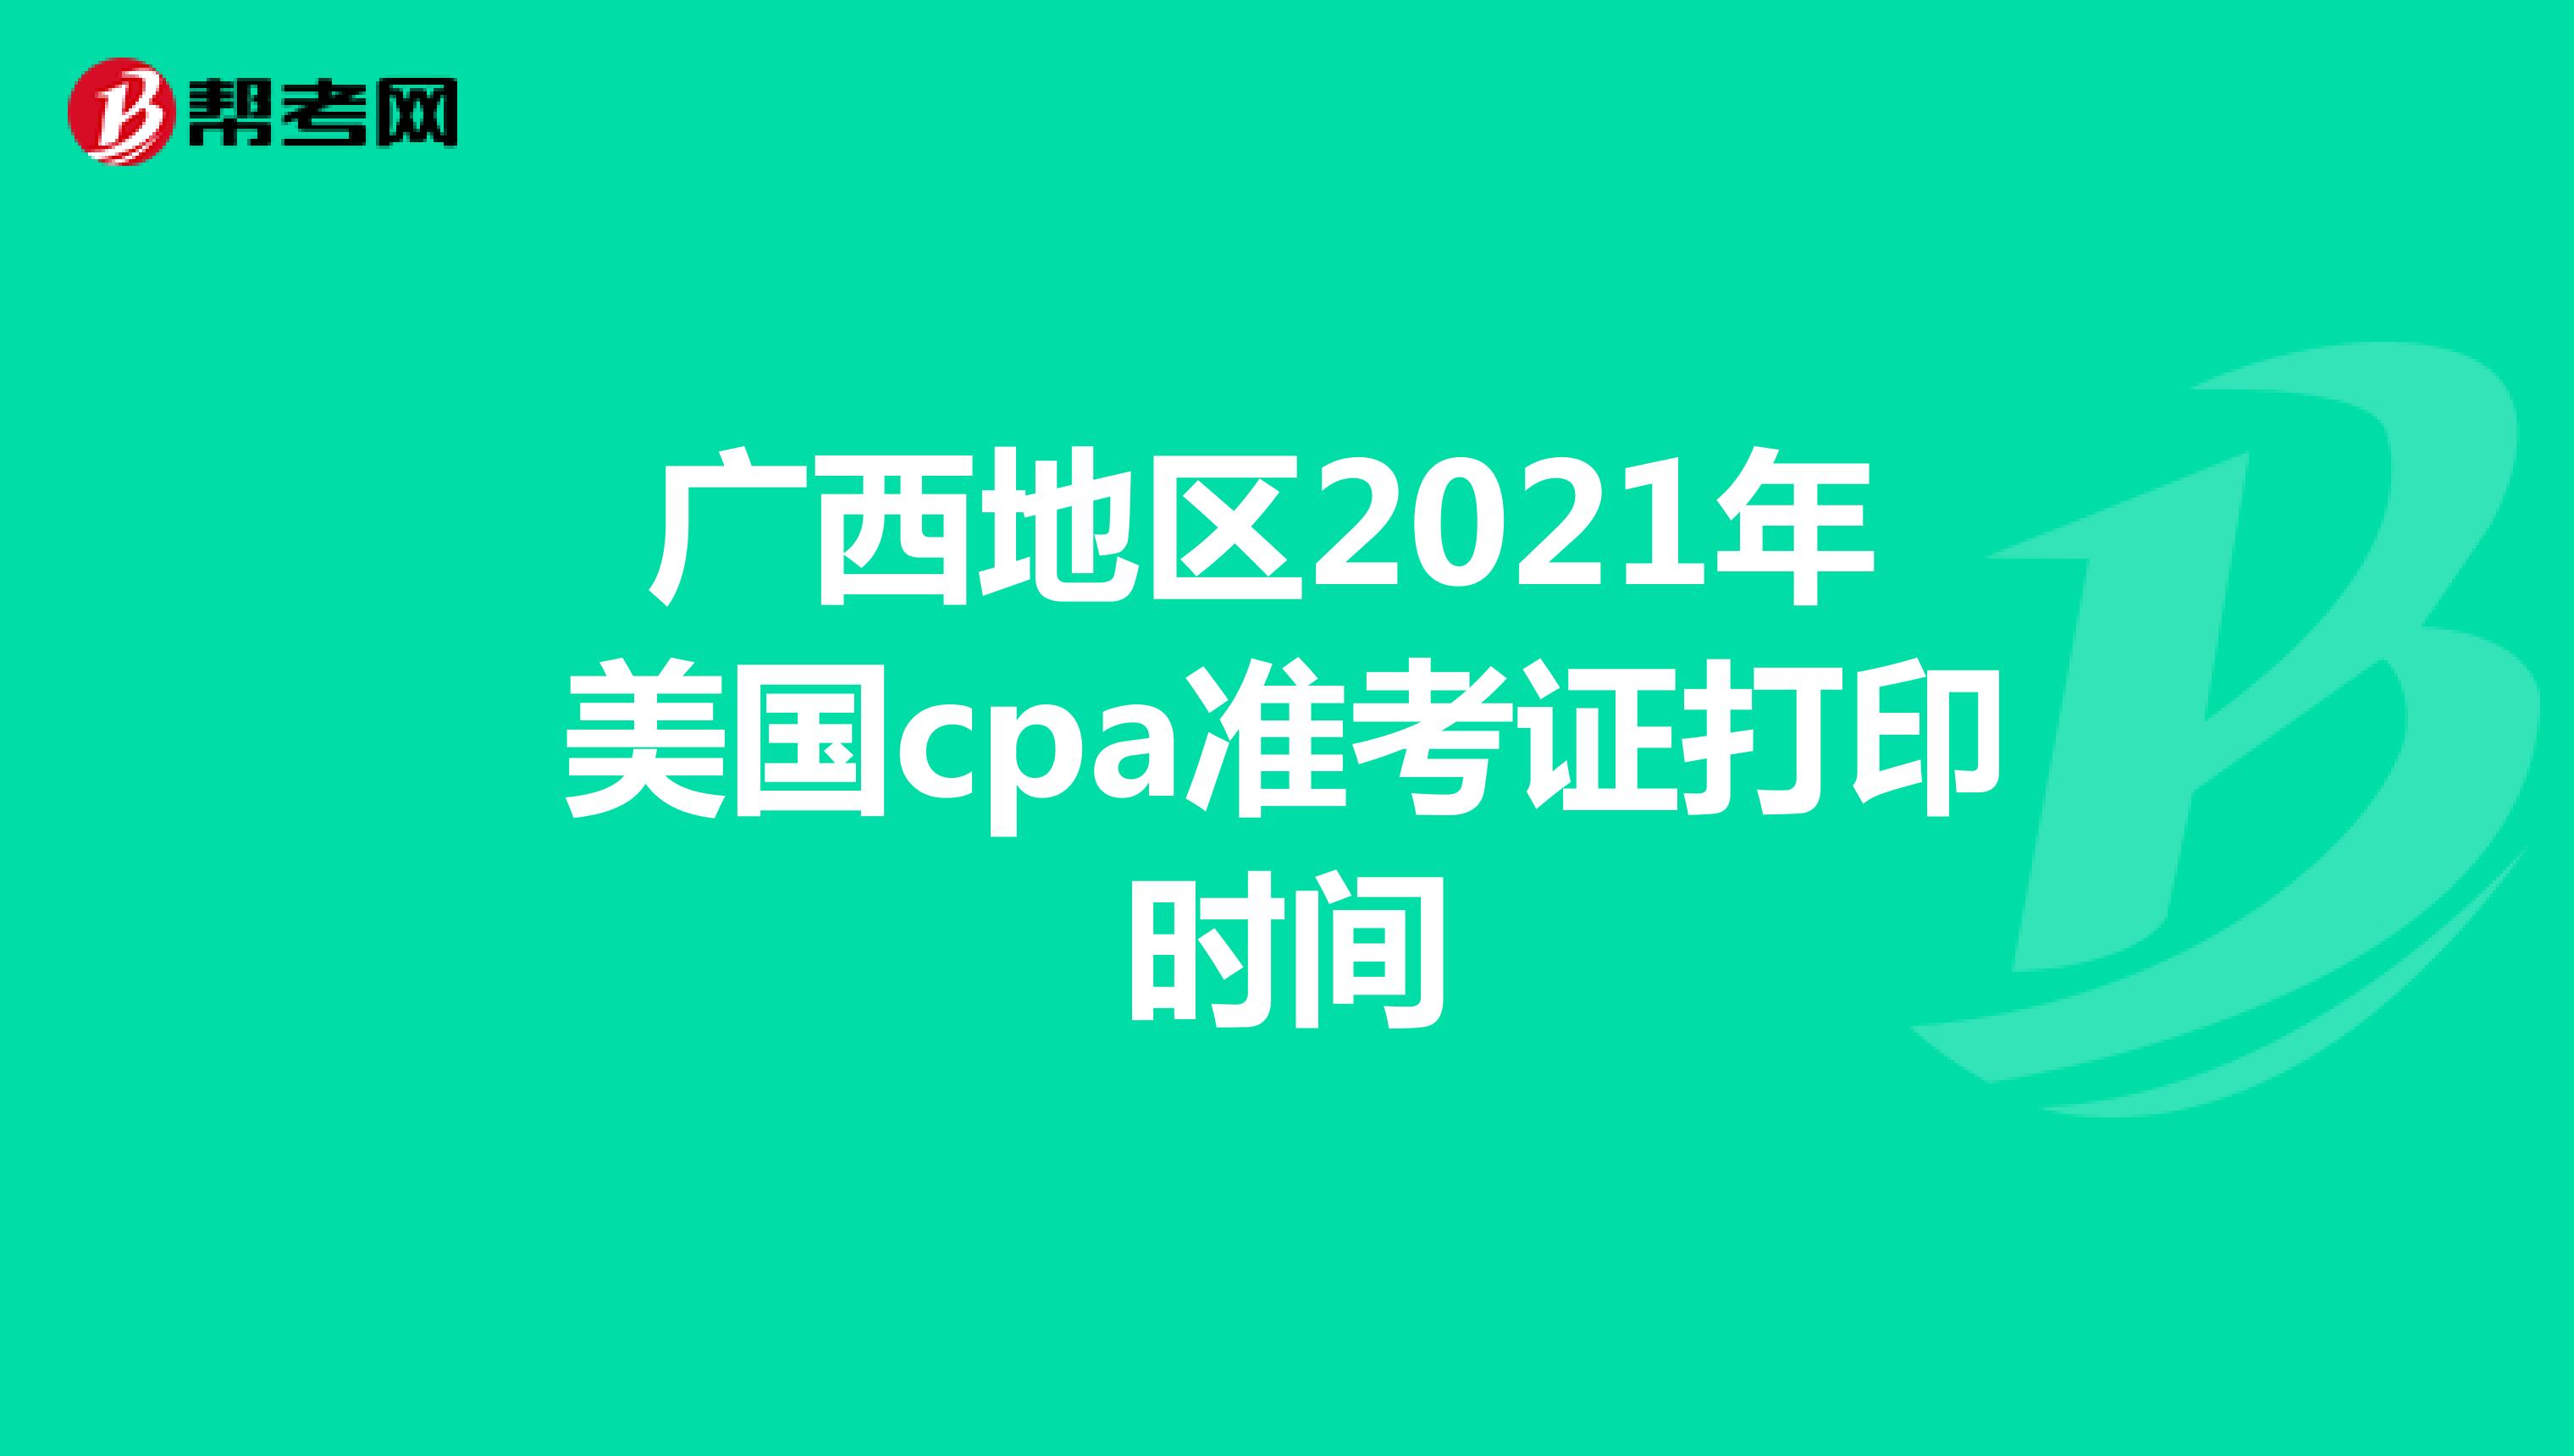 广西地区2021年美国cpa准考证打印时间